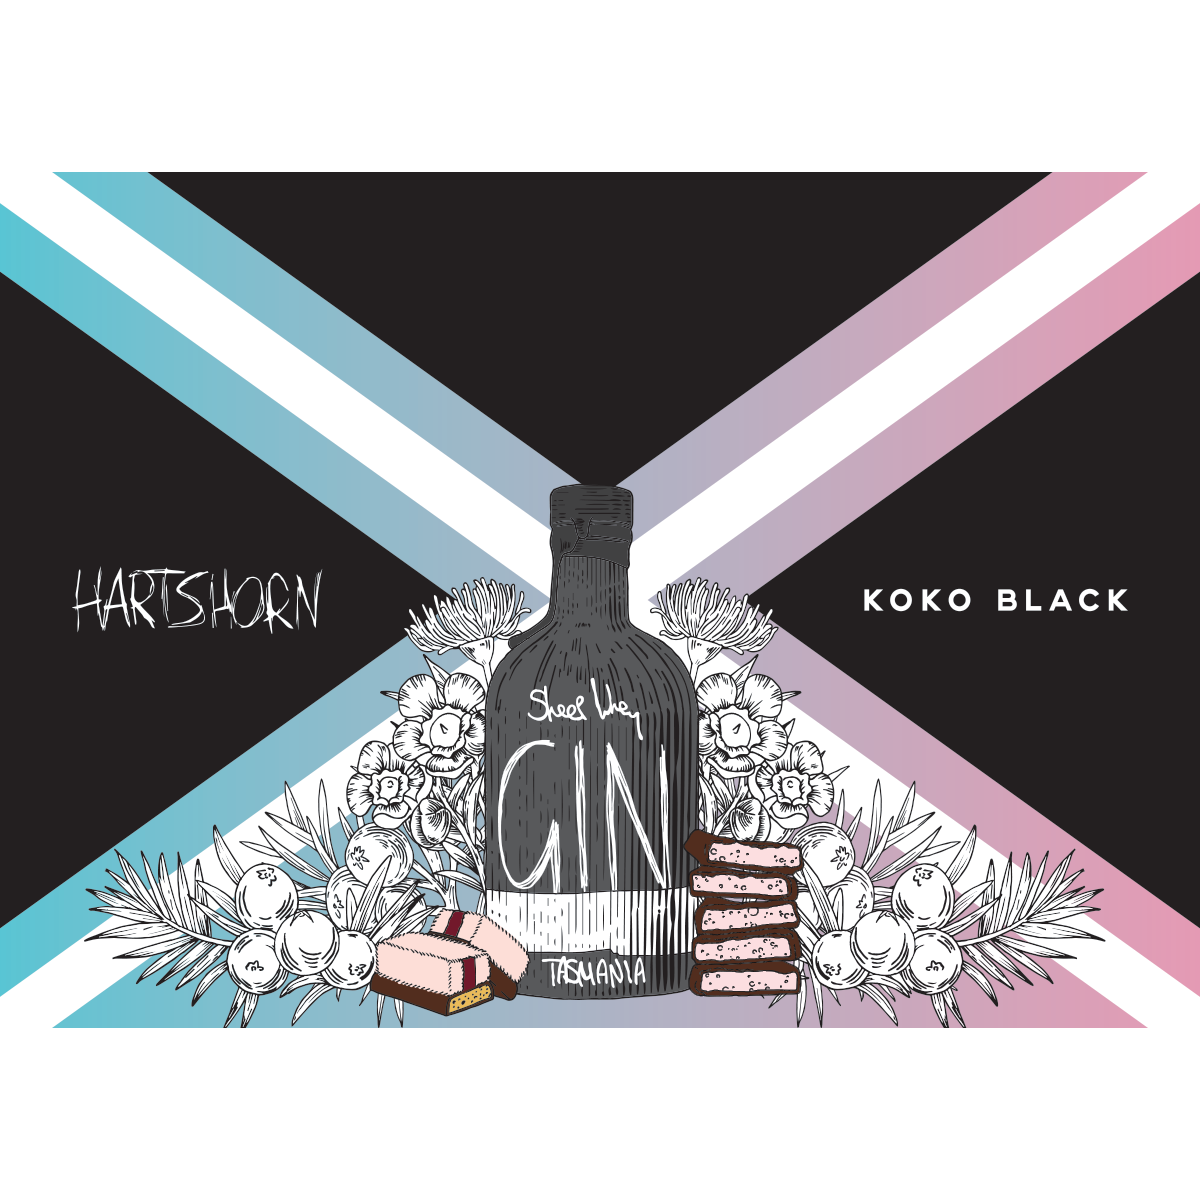 Hartshorn x Koko Black Sleeve